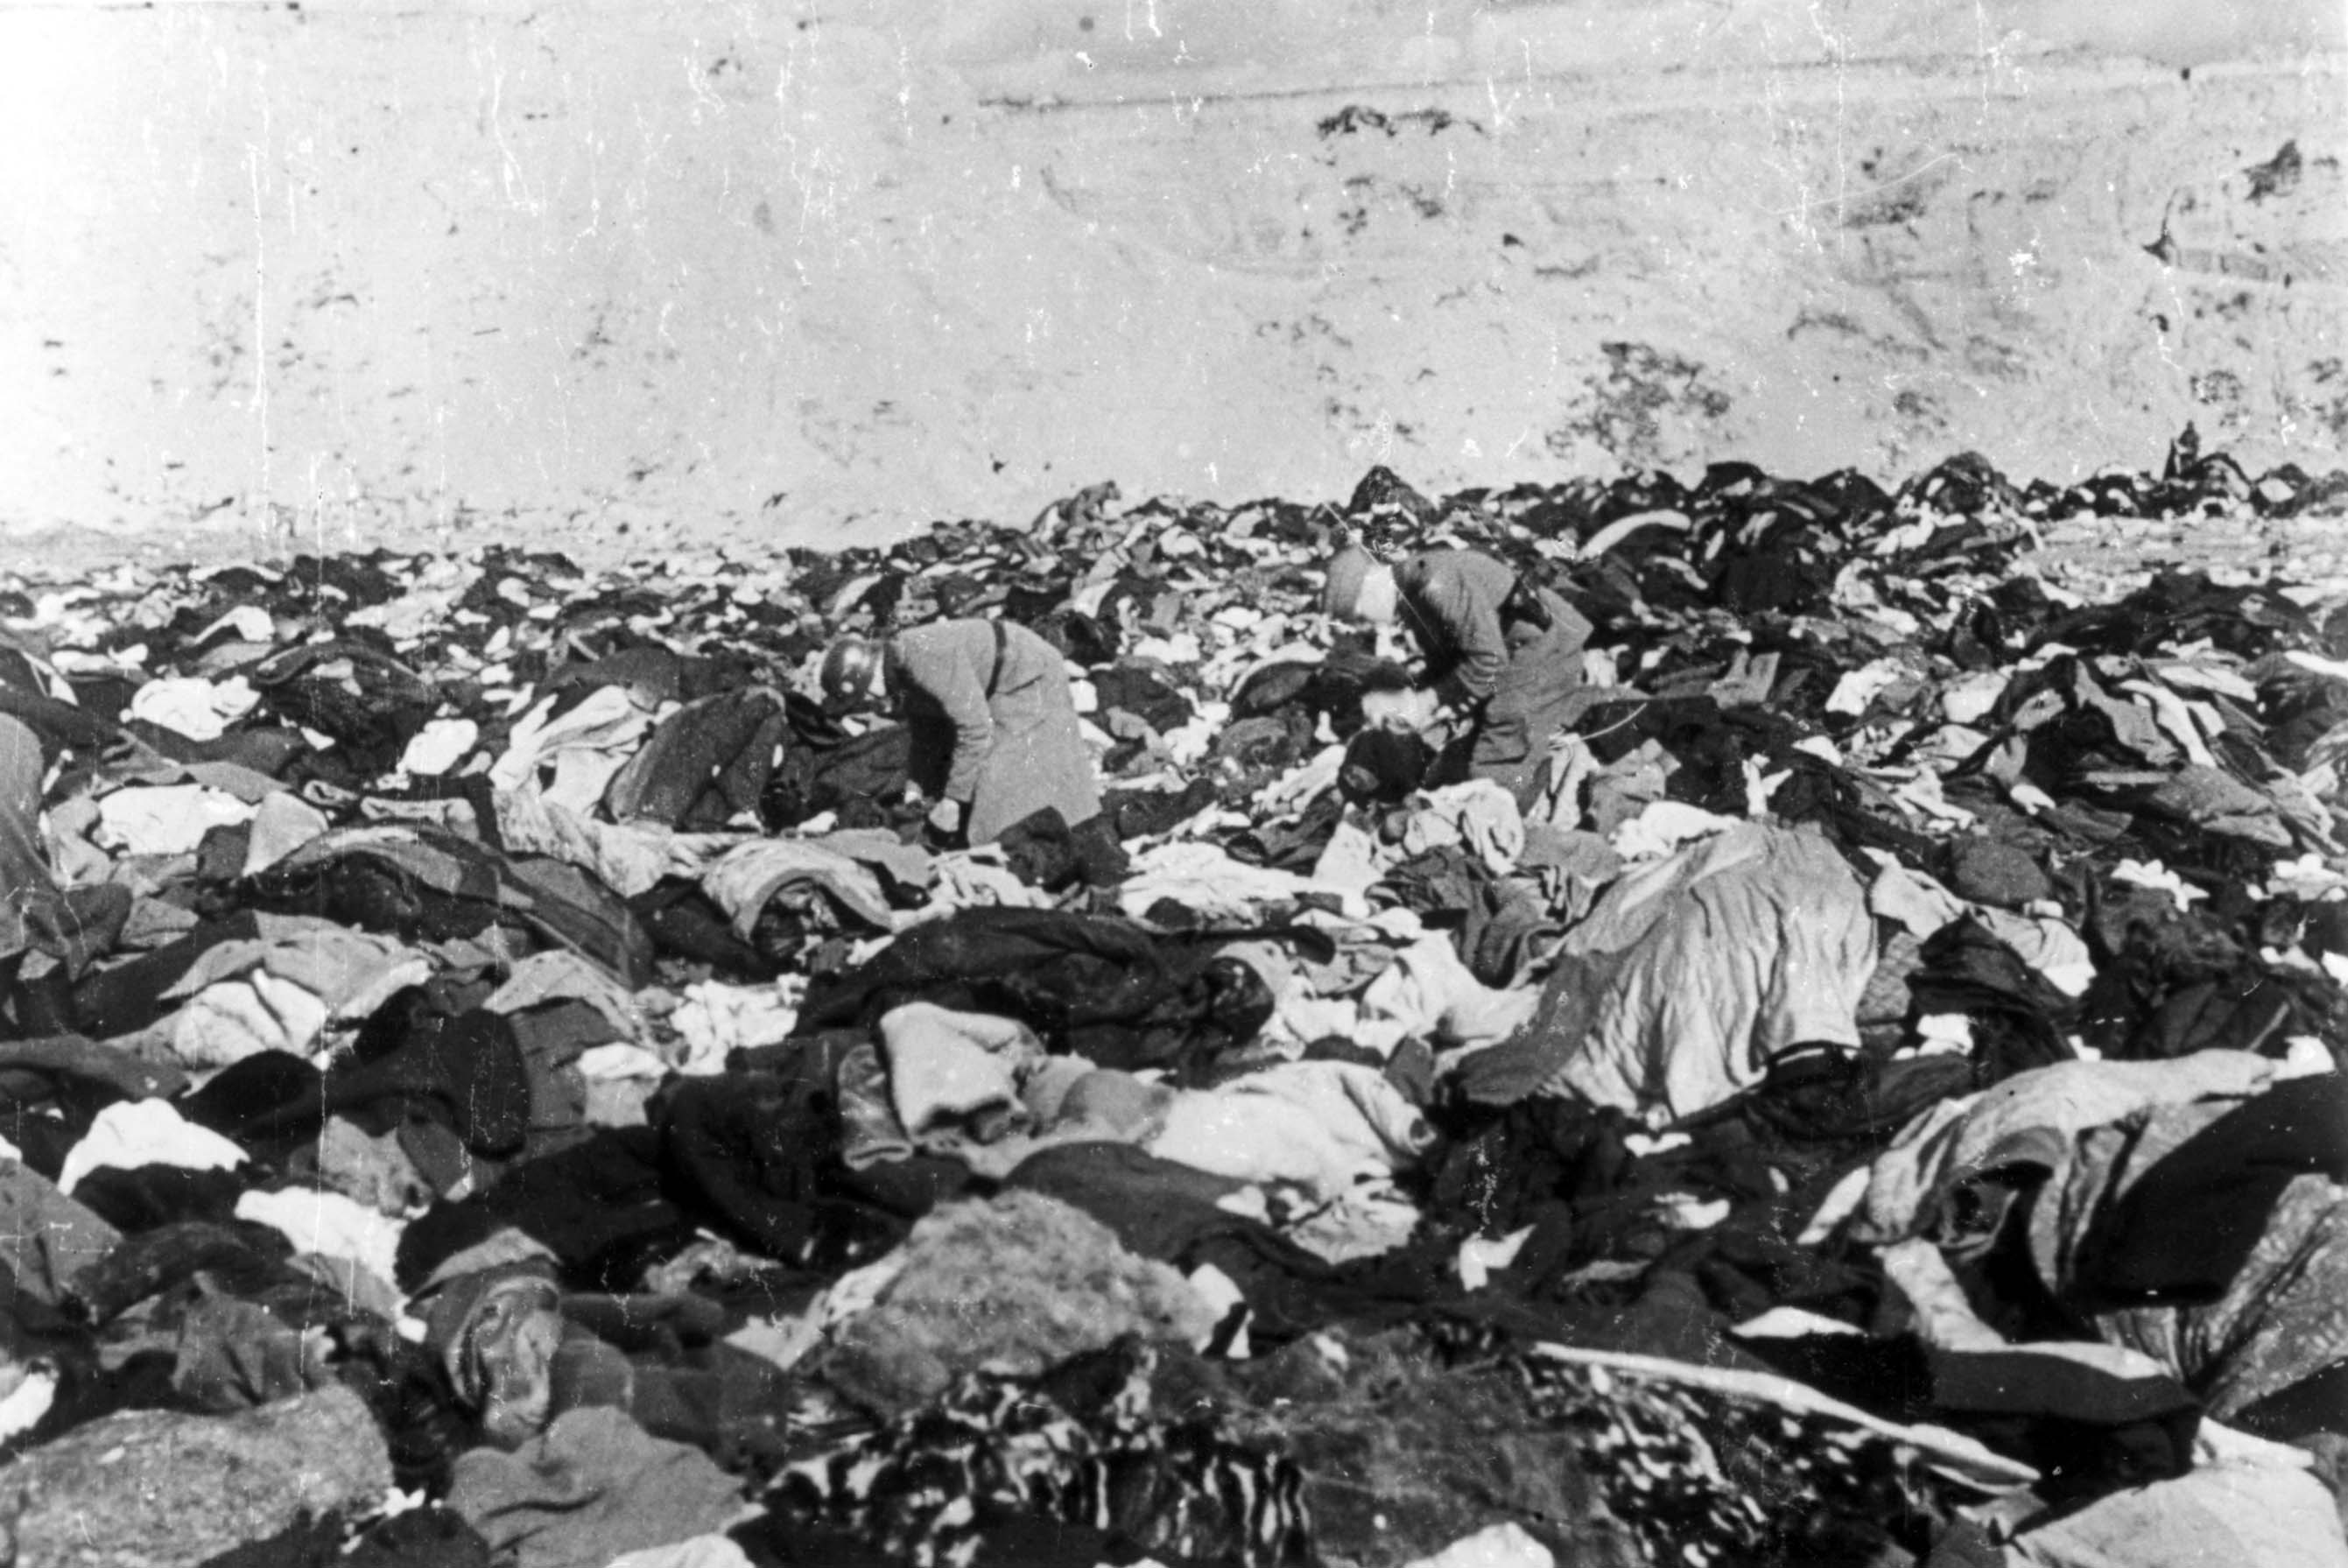 הטבח בבאבי יאר – מה ידעו בקייב ב-29 בספטמבר 1941?